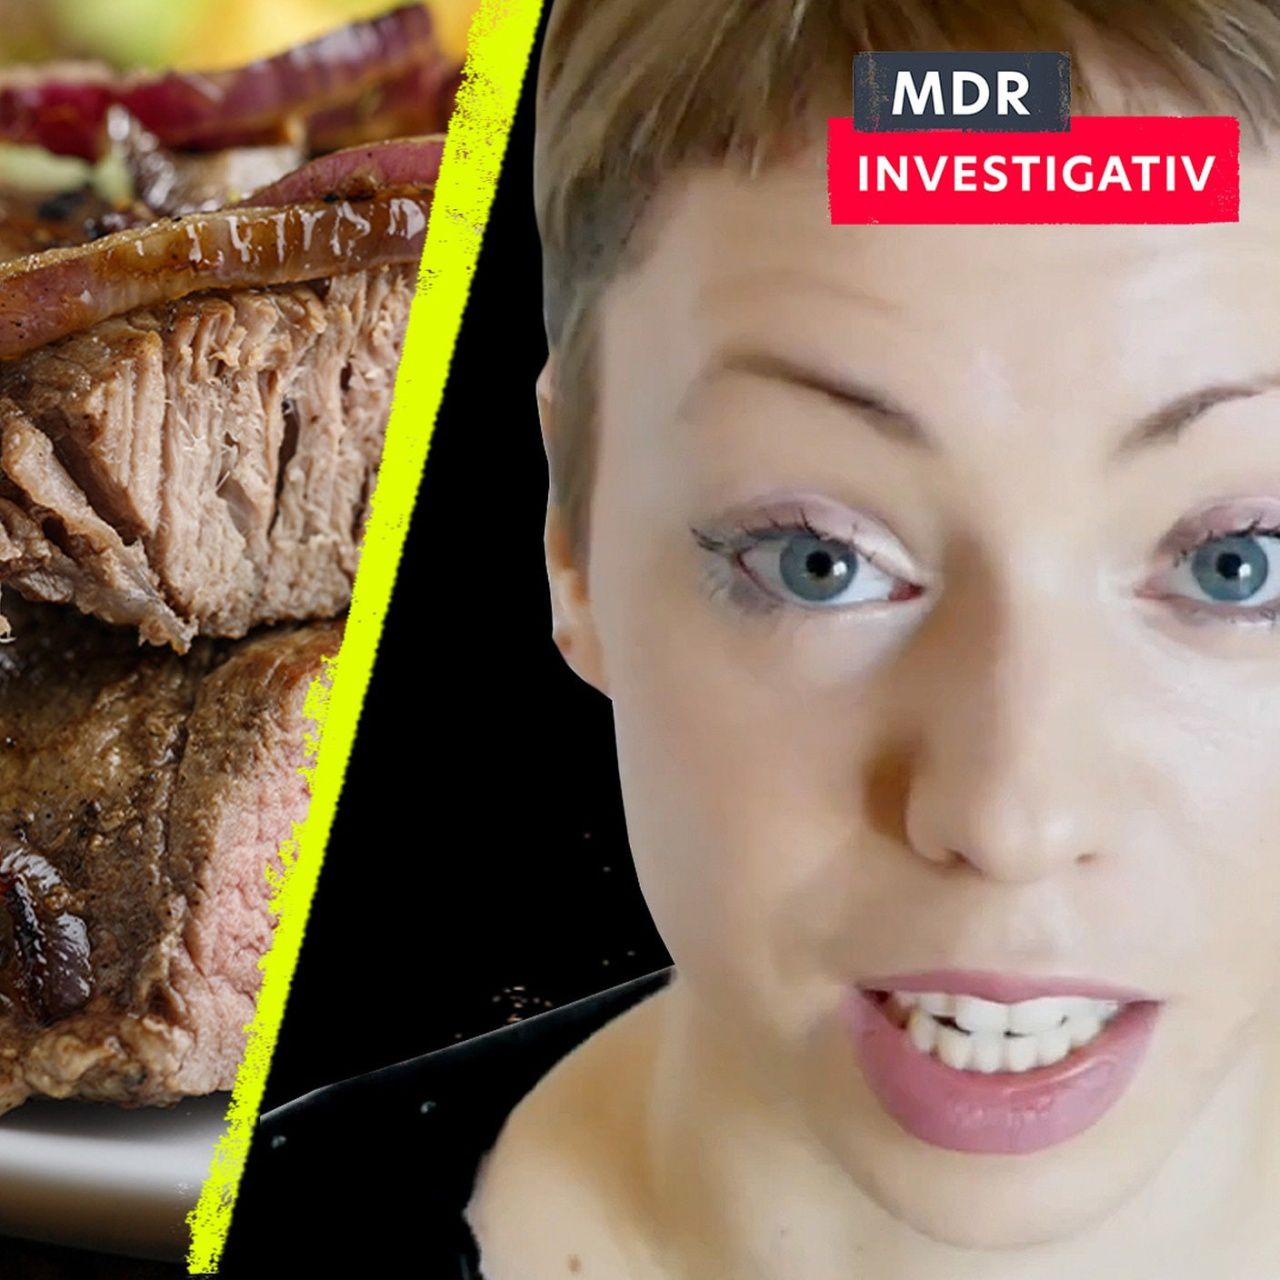 Podcast - Hinter der Recherche: Vegan vs. Fleisch: Warum polarisiert die Debatte ums Essen so?